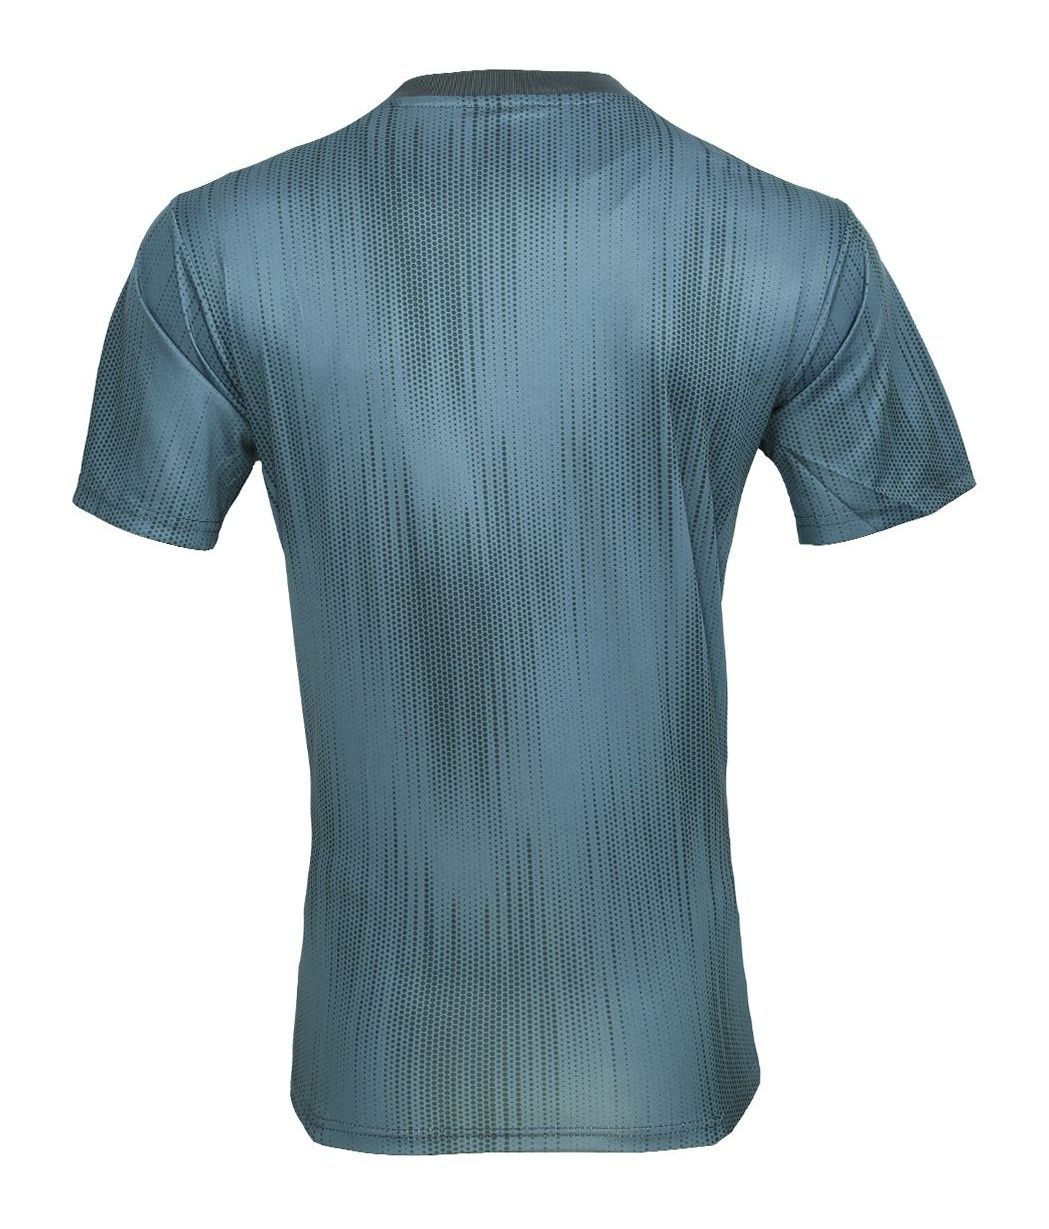 تی شرت ورزشی مردانه طرح بایرن مونیخ 03 مدل 20-19